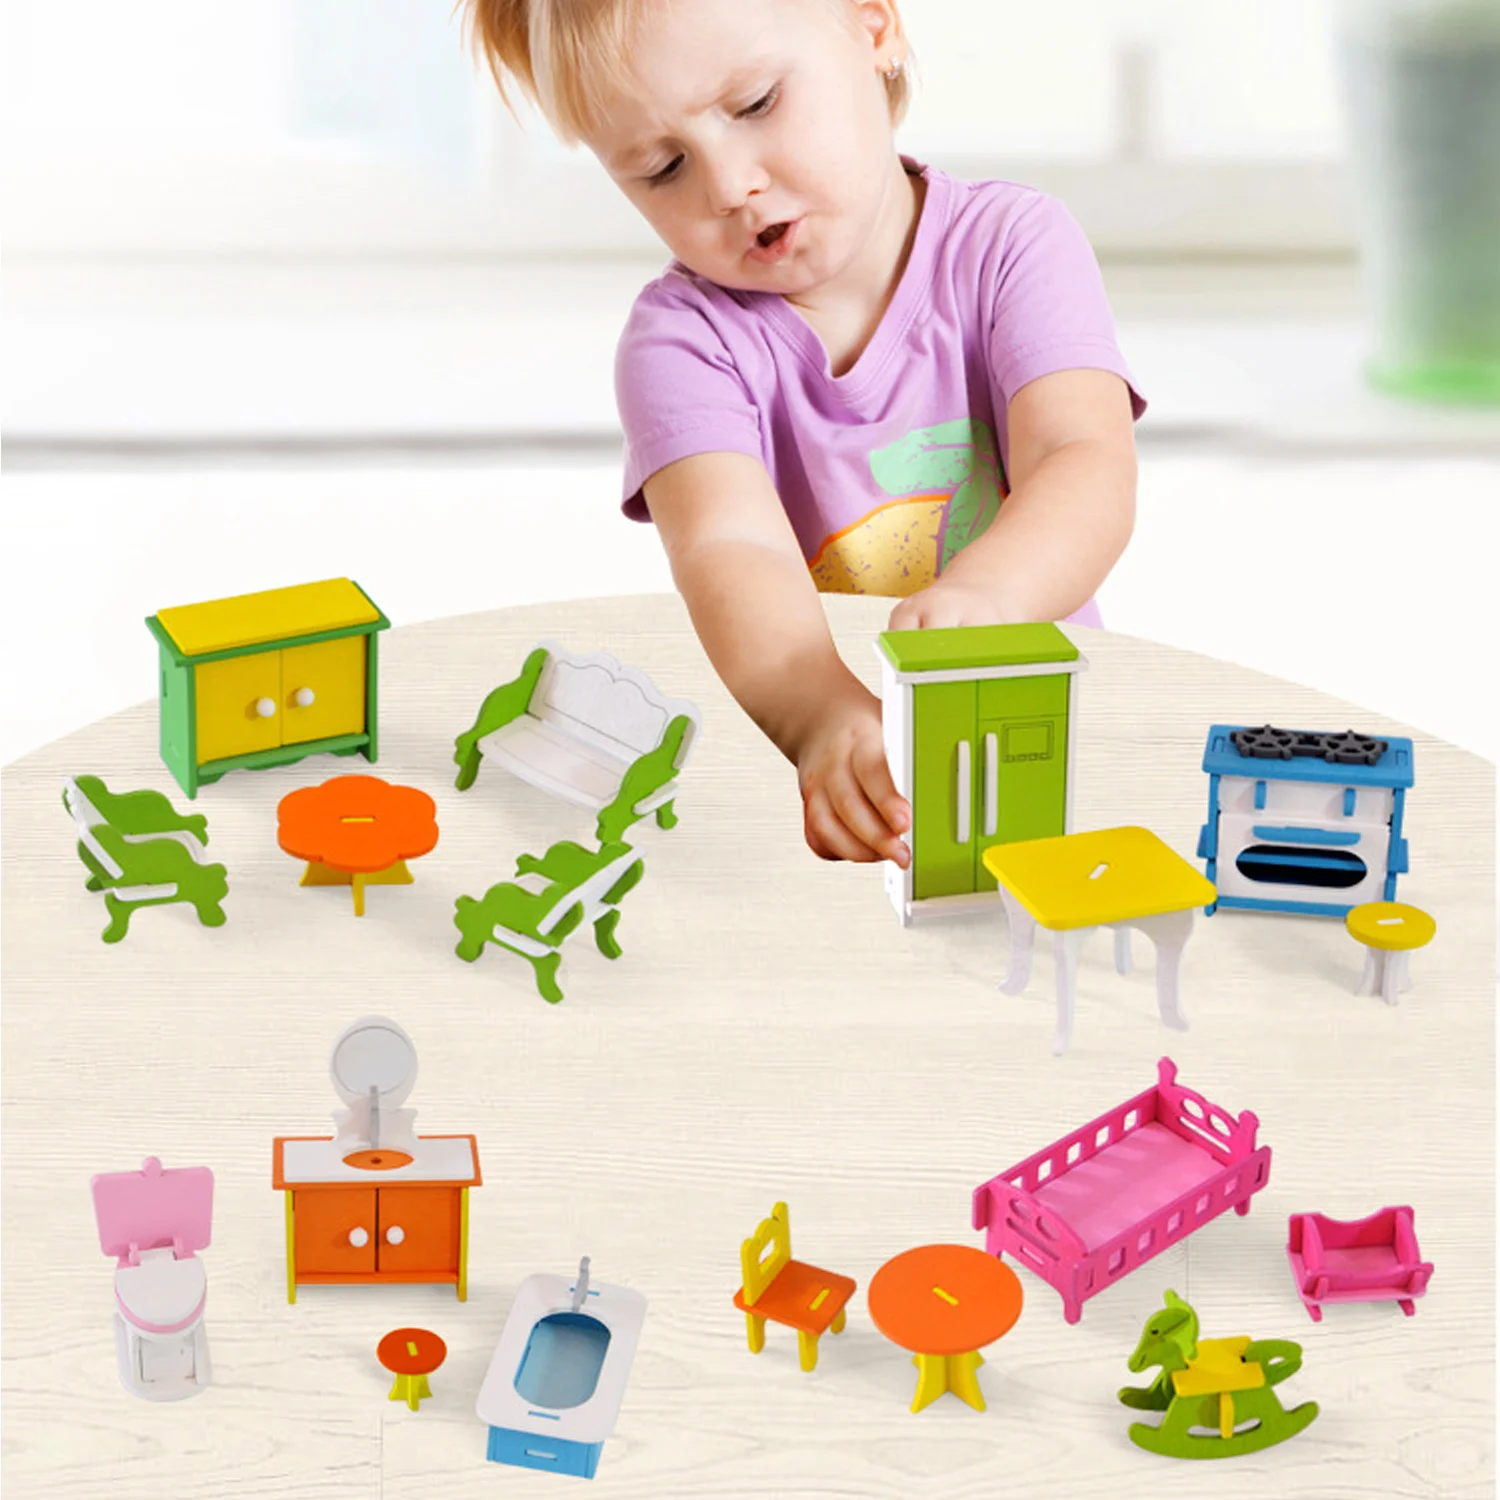 Besegad 4 комплекта деревянные DIY сборка кухни ванной гостиной спальни мебель игрушки с клеем для игр детей